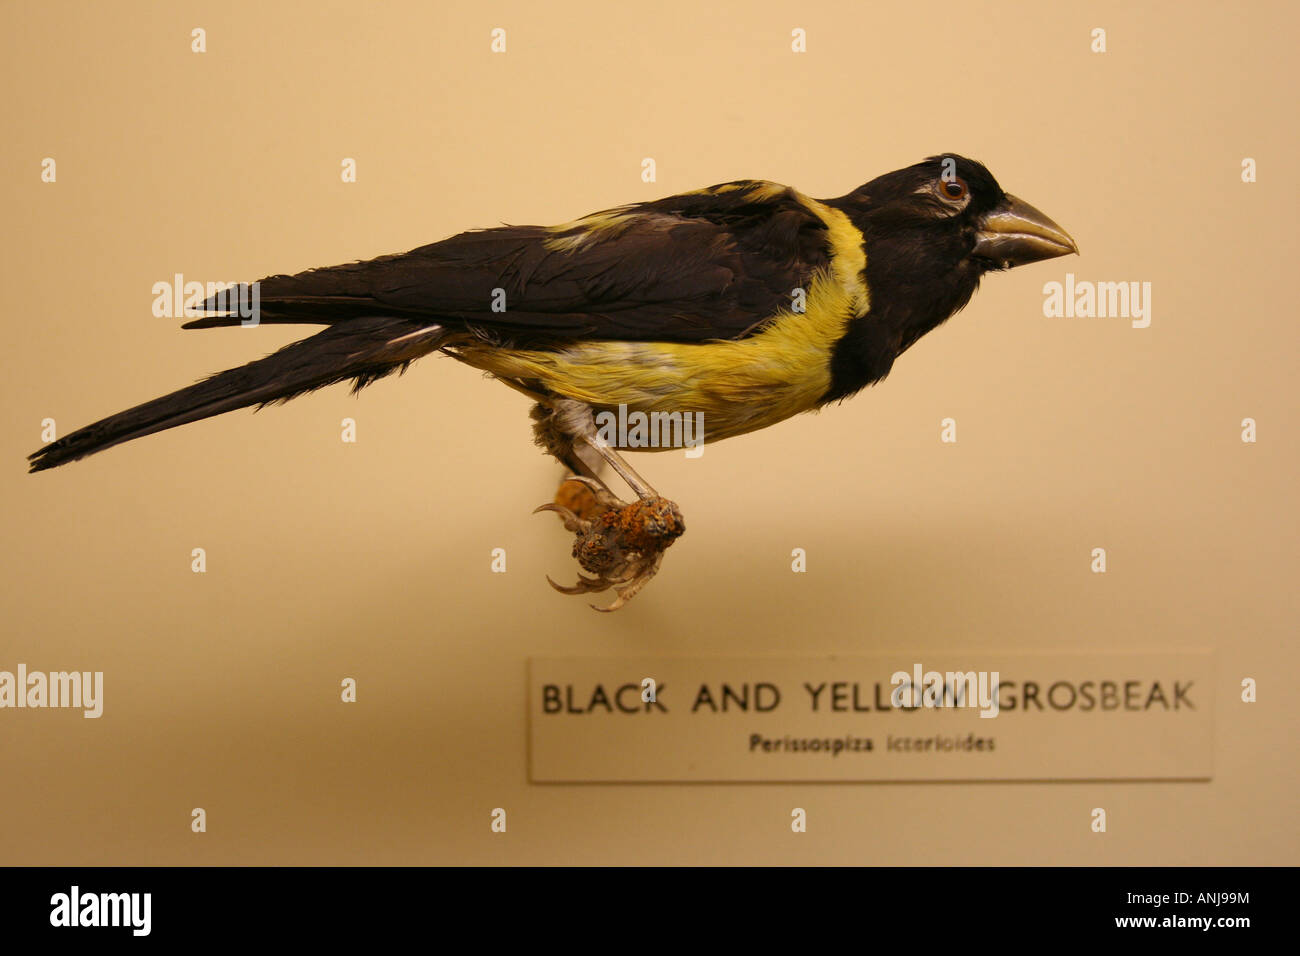 Black and Yellow Grosbeak Stock Photo